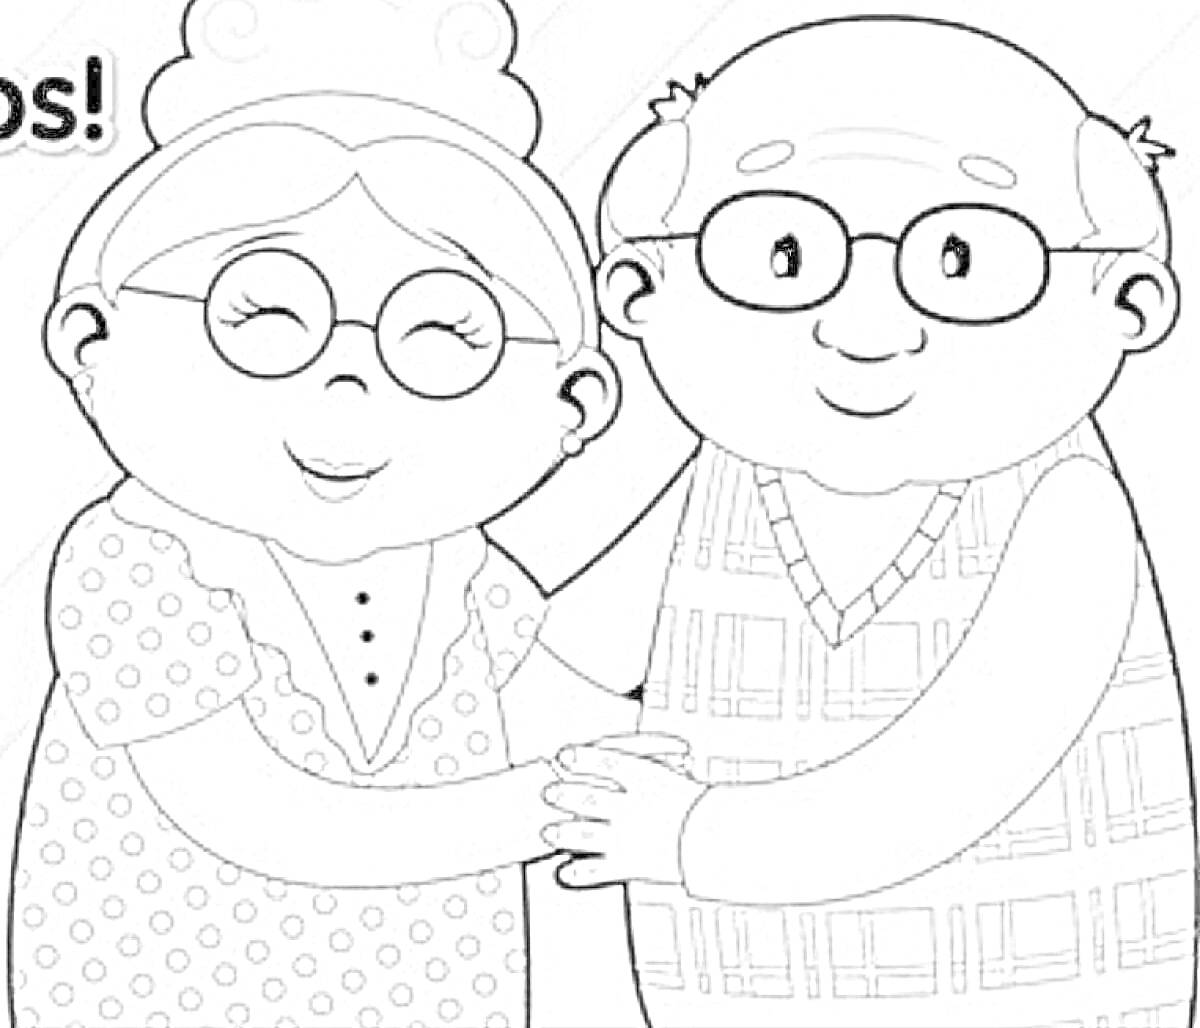 Раскраска Бабушка с короткими волосами в очках в платье с горошками обнимает дедушку с лысой головой в клетчатой жилетке и очках